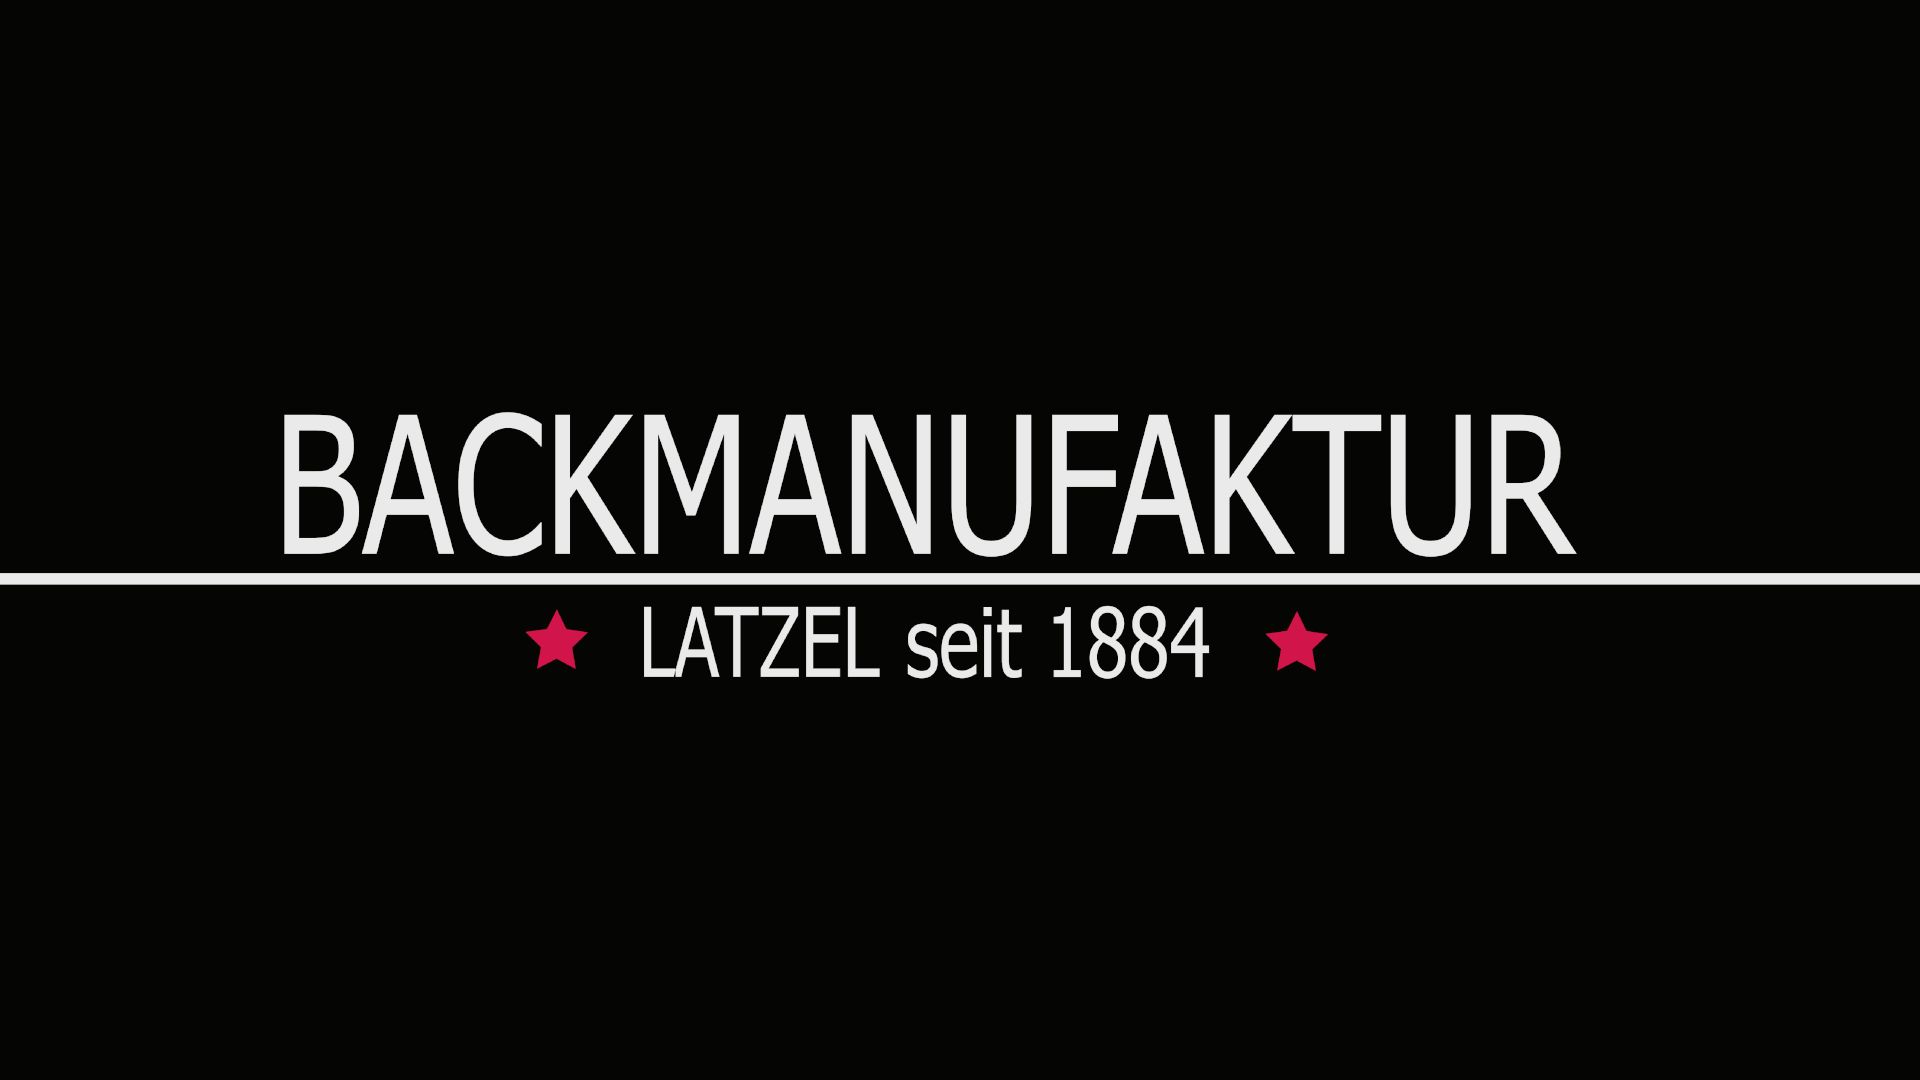 Backmanufaktur Latzel seit 1884